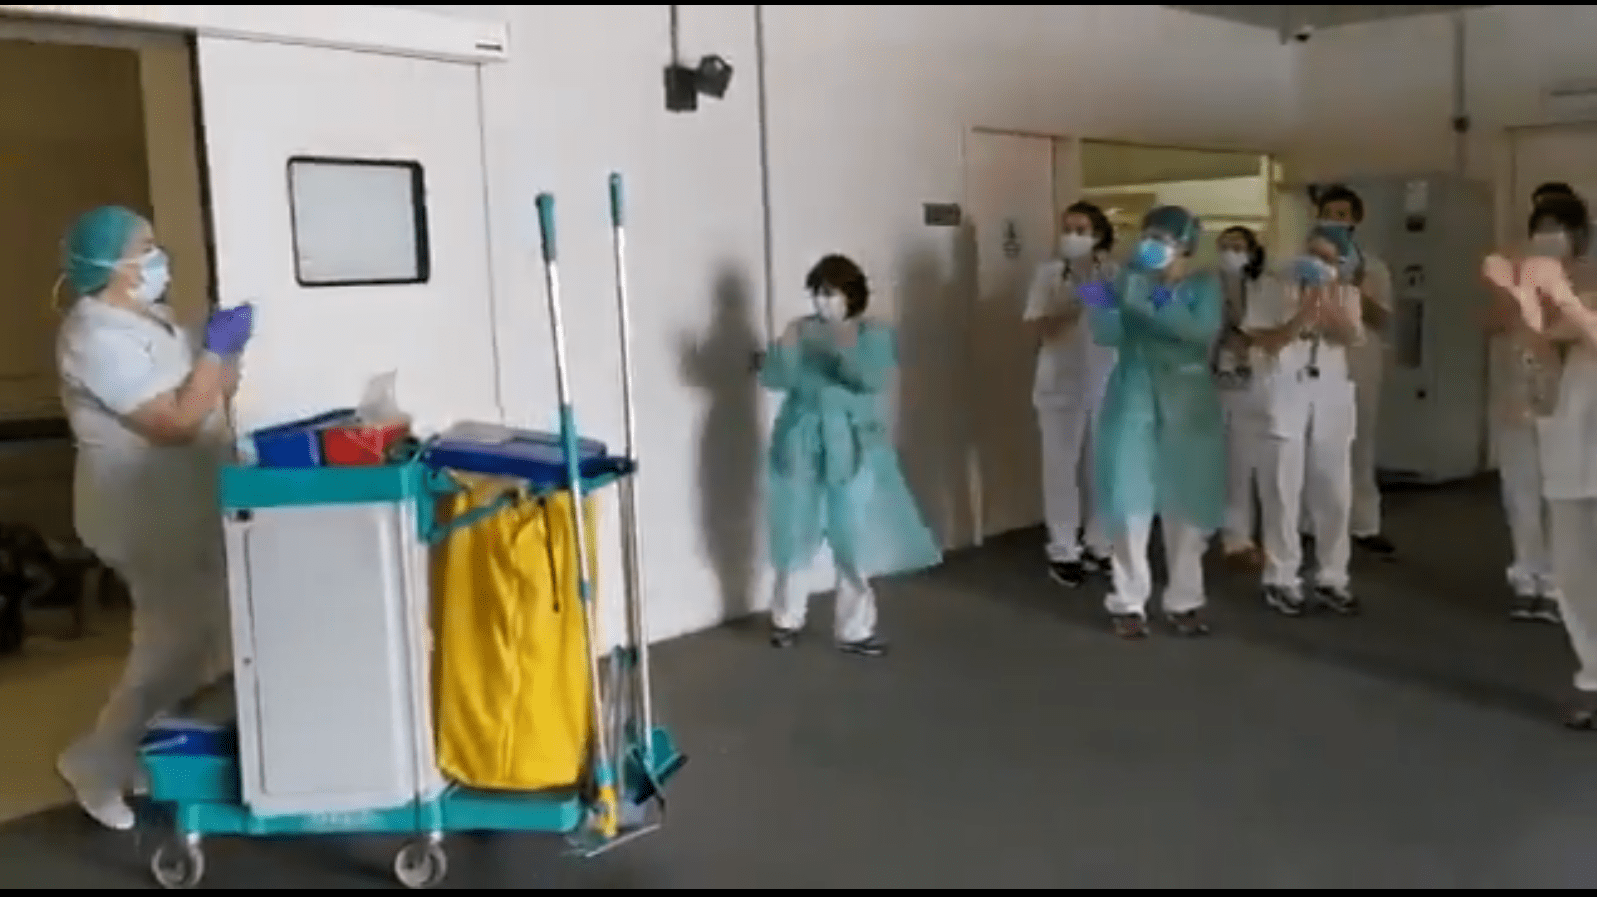 Captura de pantalla del video en el que el personal de salud aplaude al personal de limpieza del Hospital Sant Joan de Déu en Barcelona. | Foto: Twitter / SJDbarcelona_ca